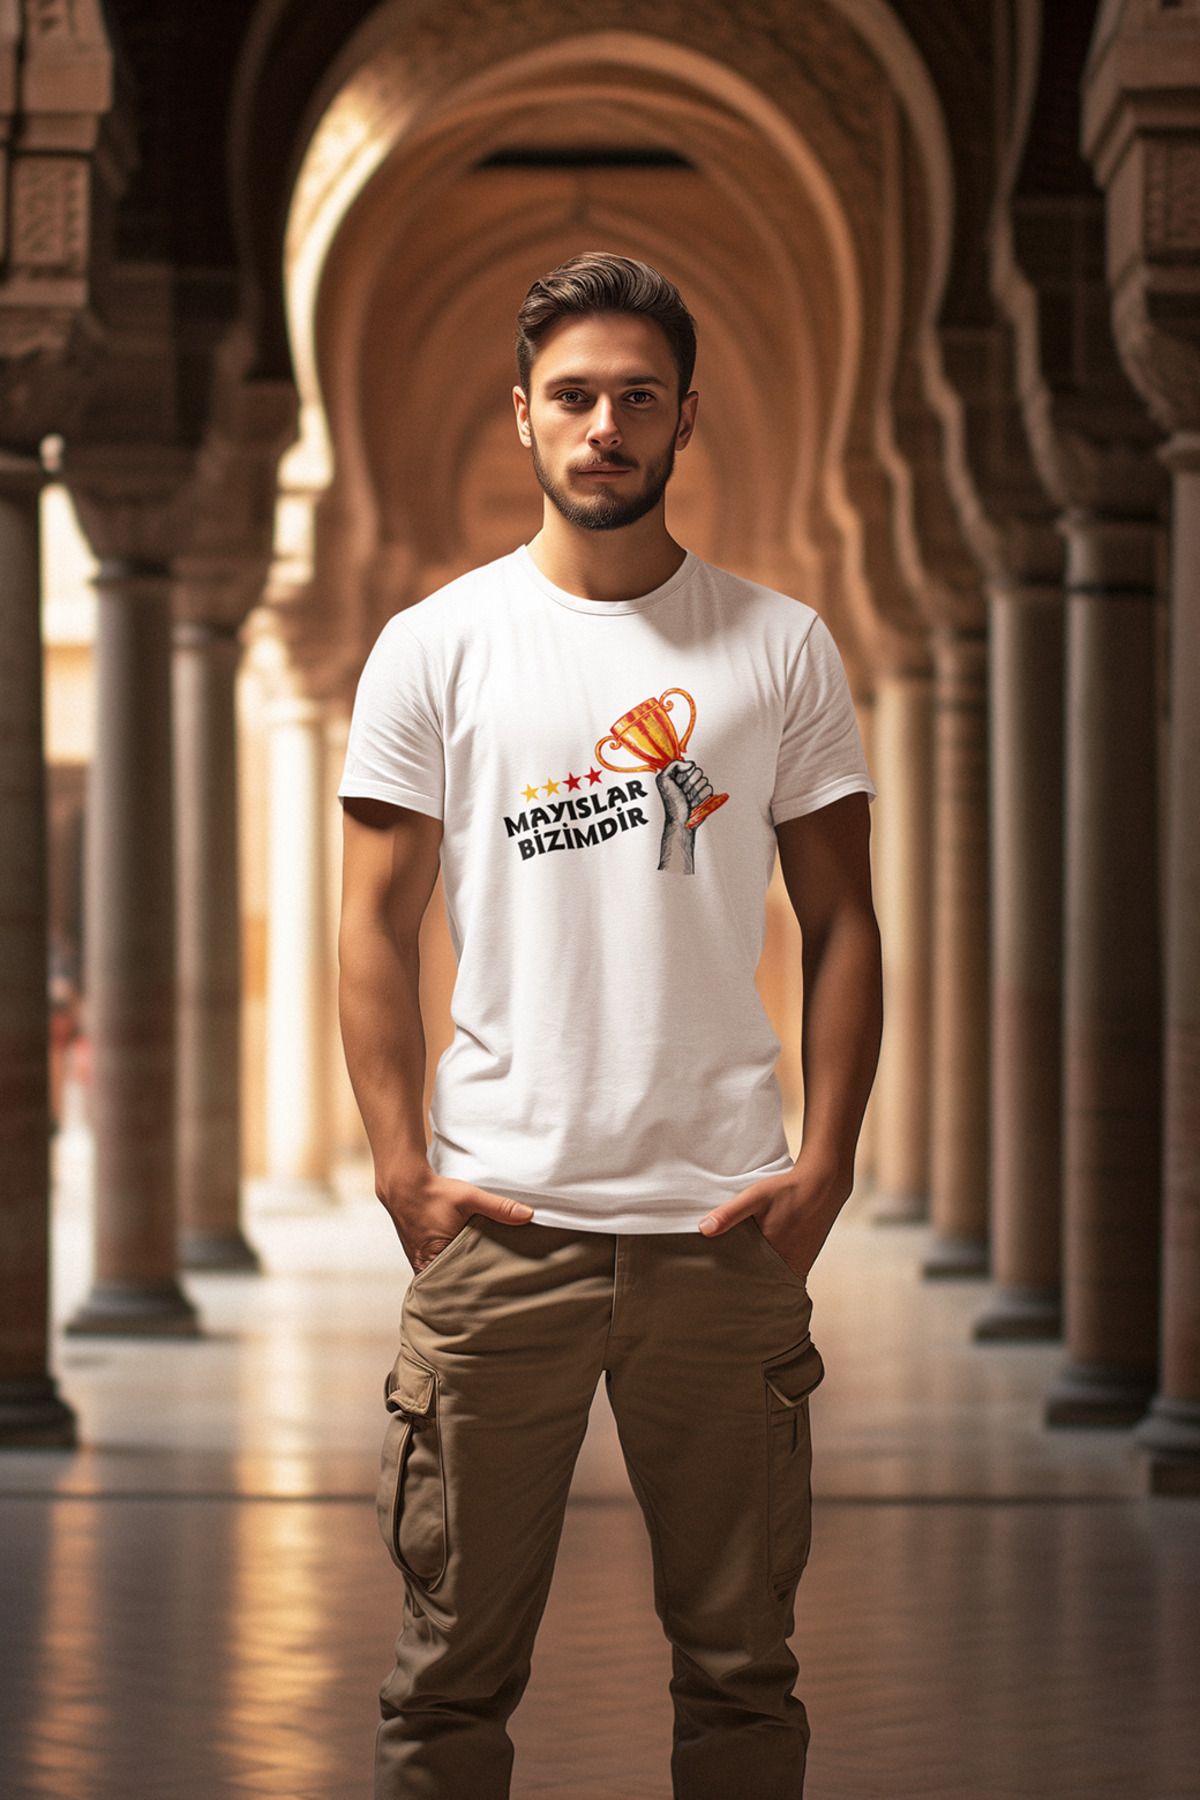 Fanatik Market 100% Pamuklu Mayıslar Bizimdir Premium Tişört